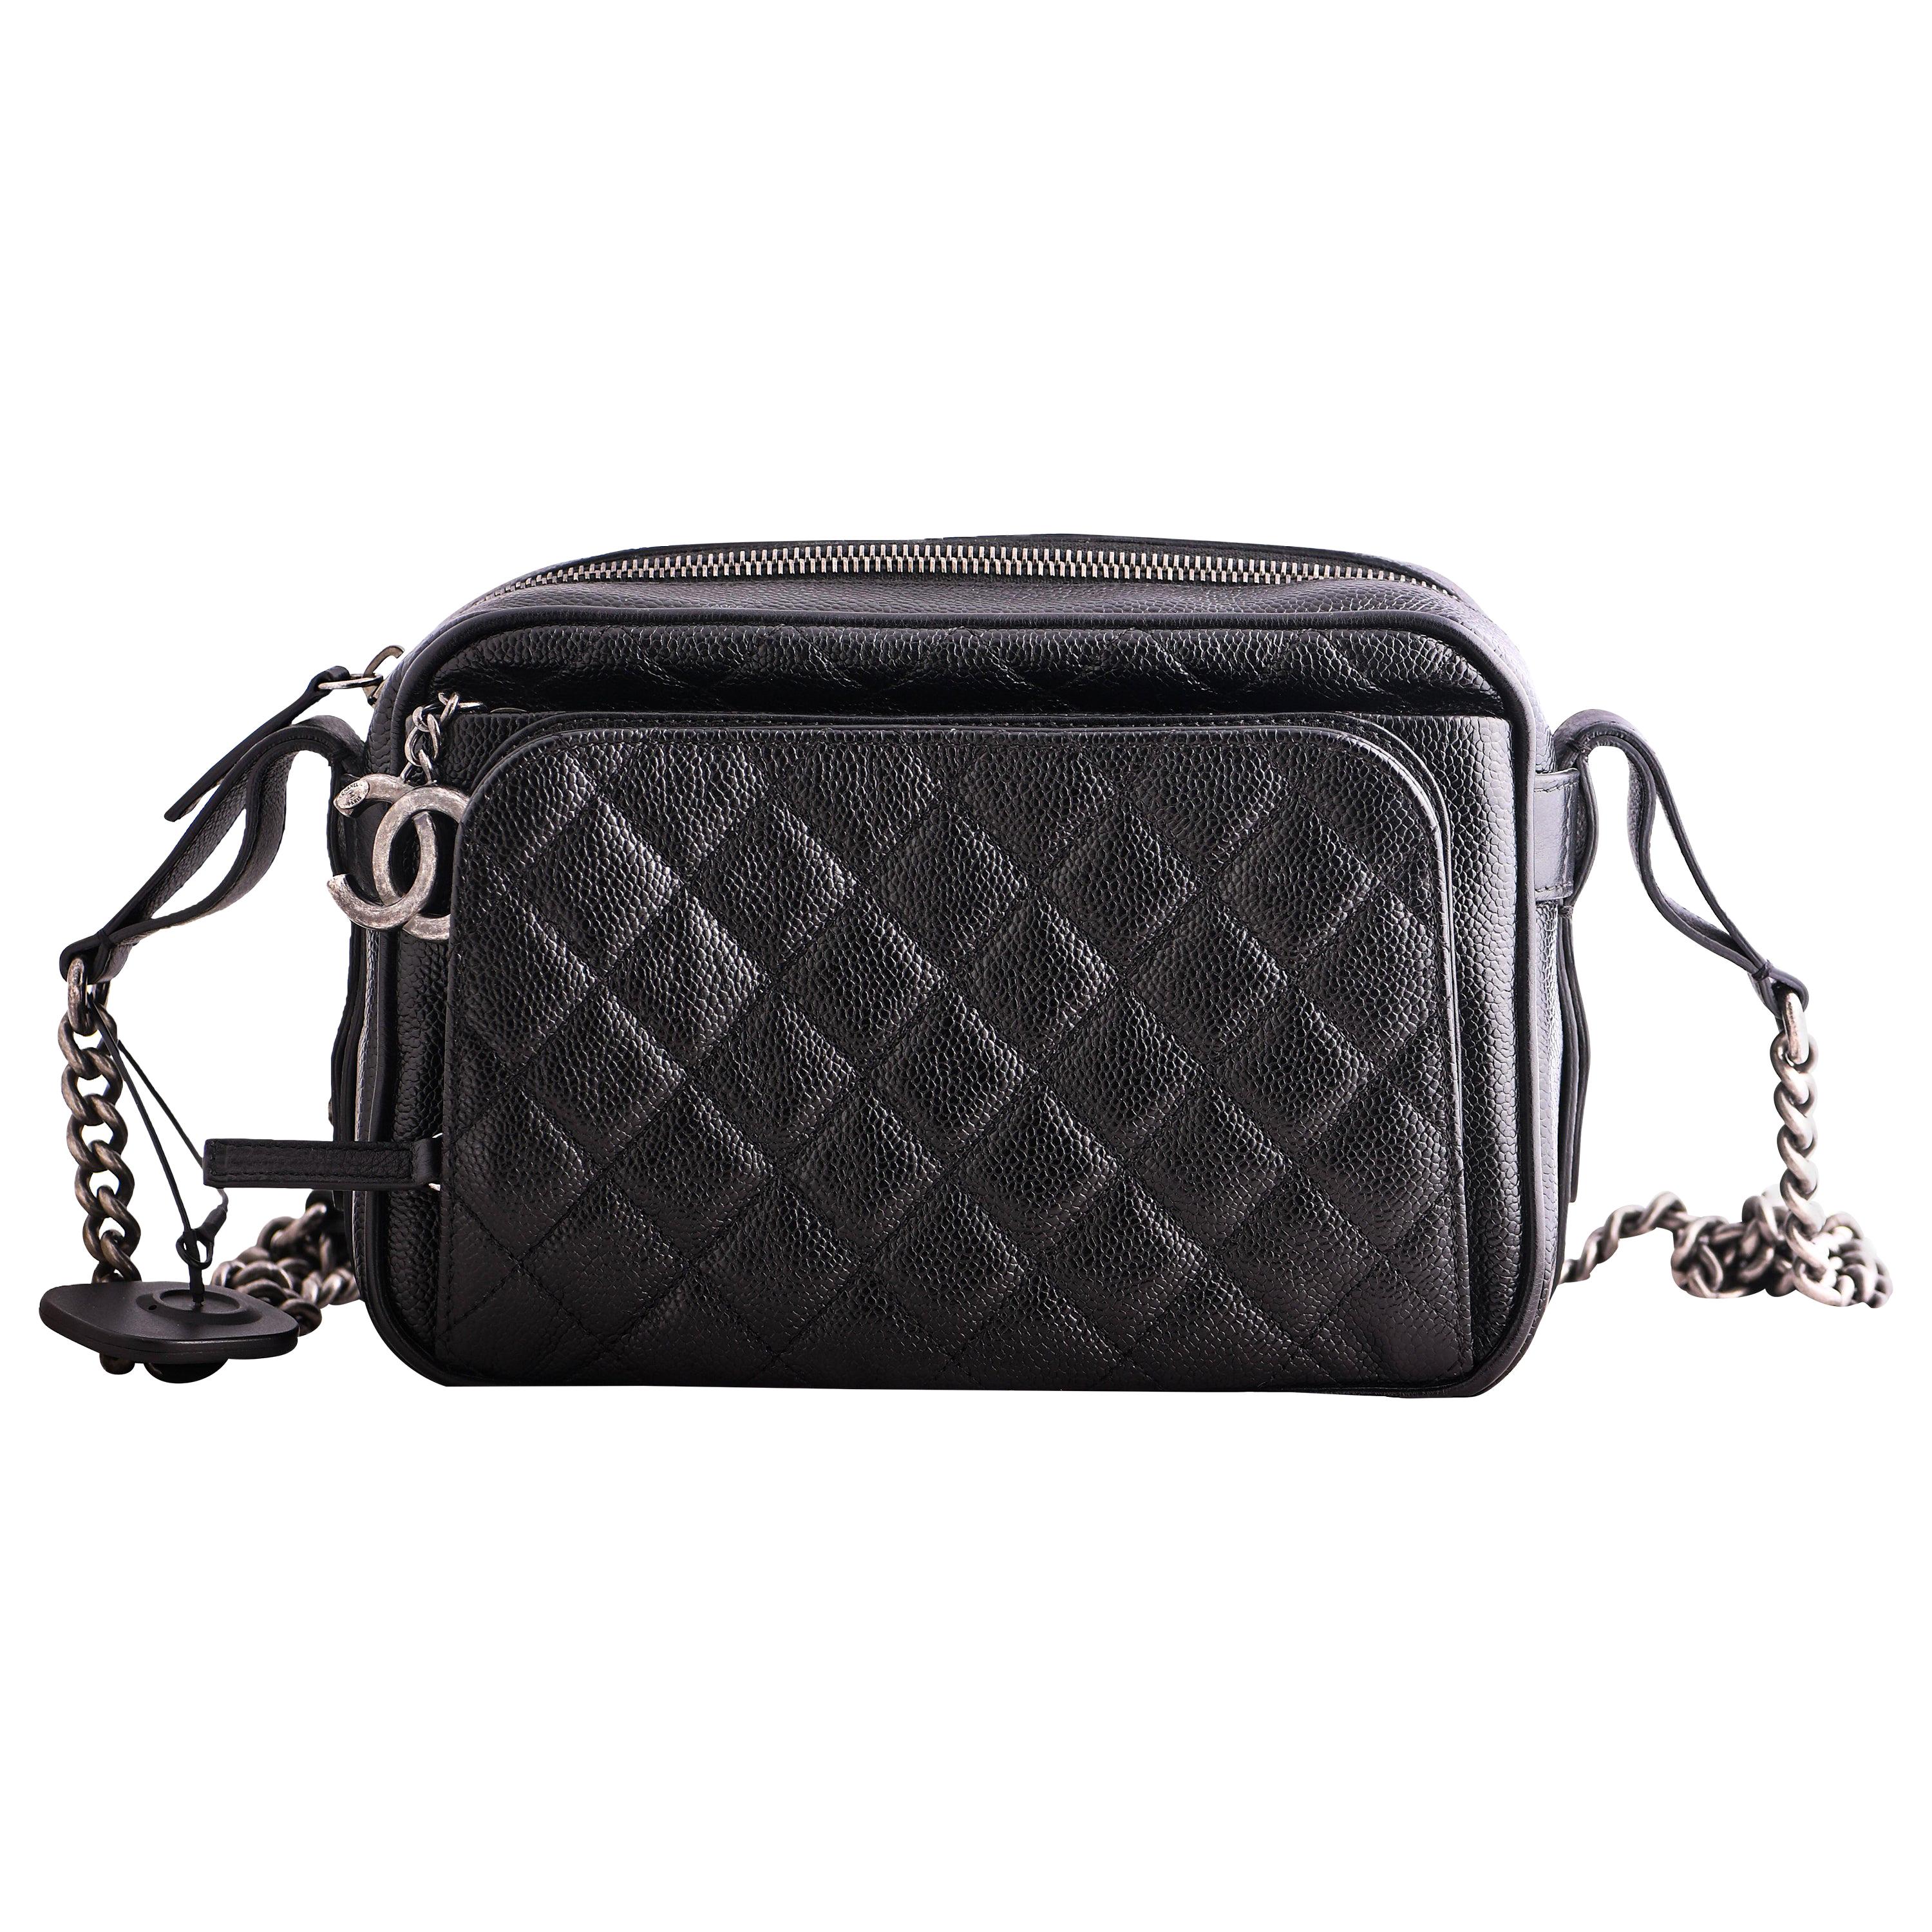 Chanel Black Caviar Affinity Camera Bag 